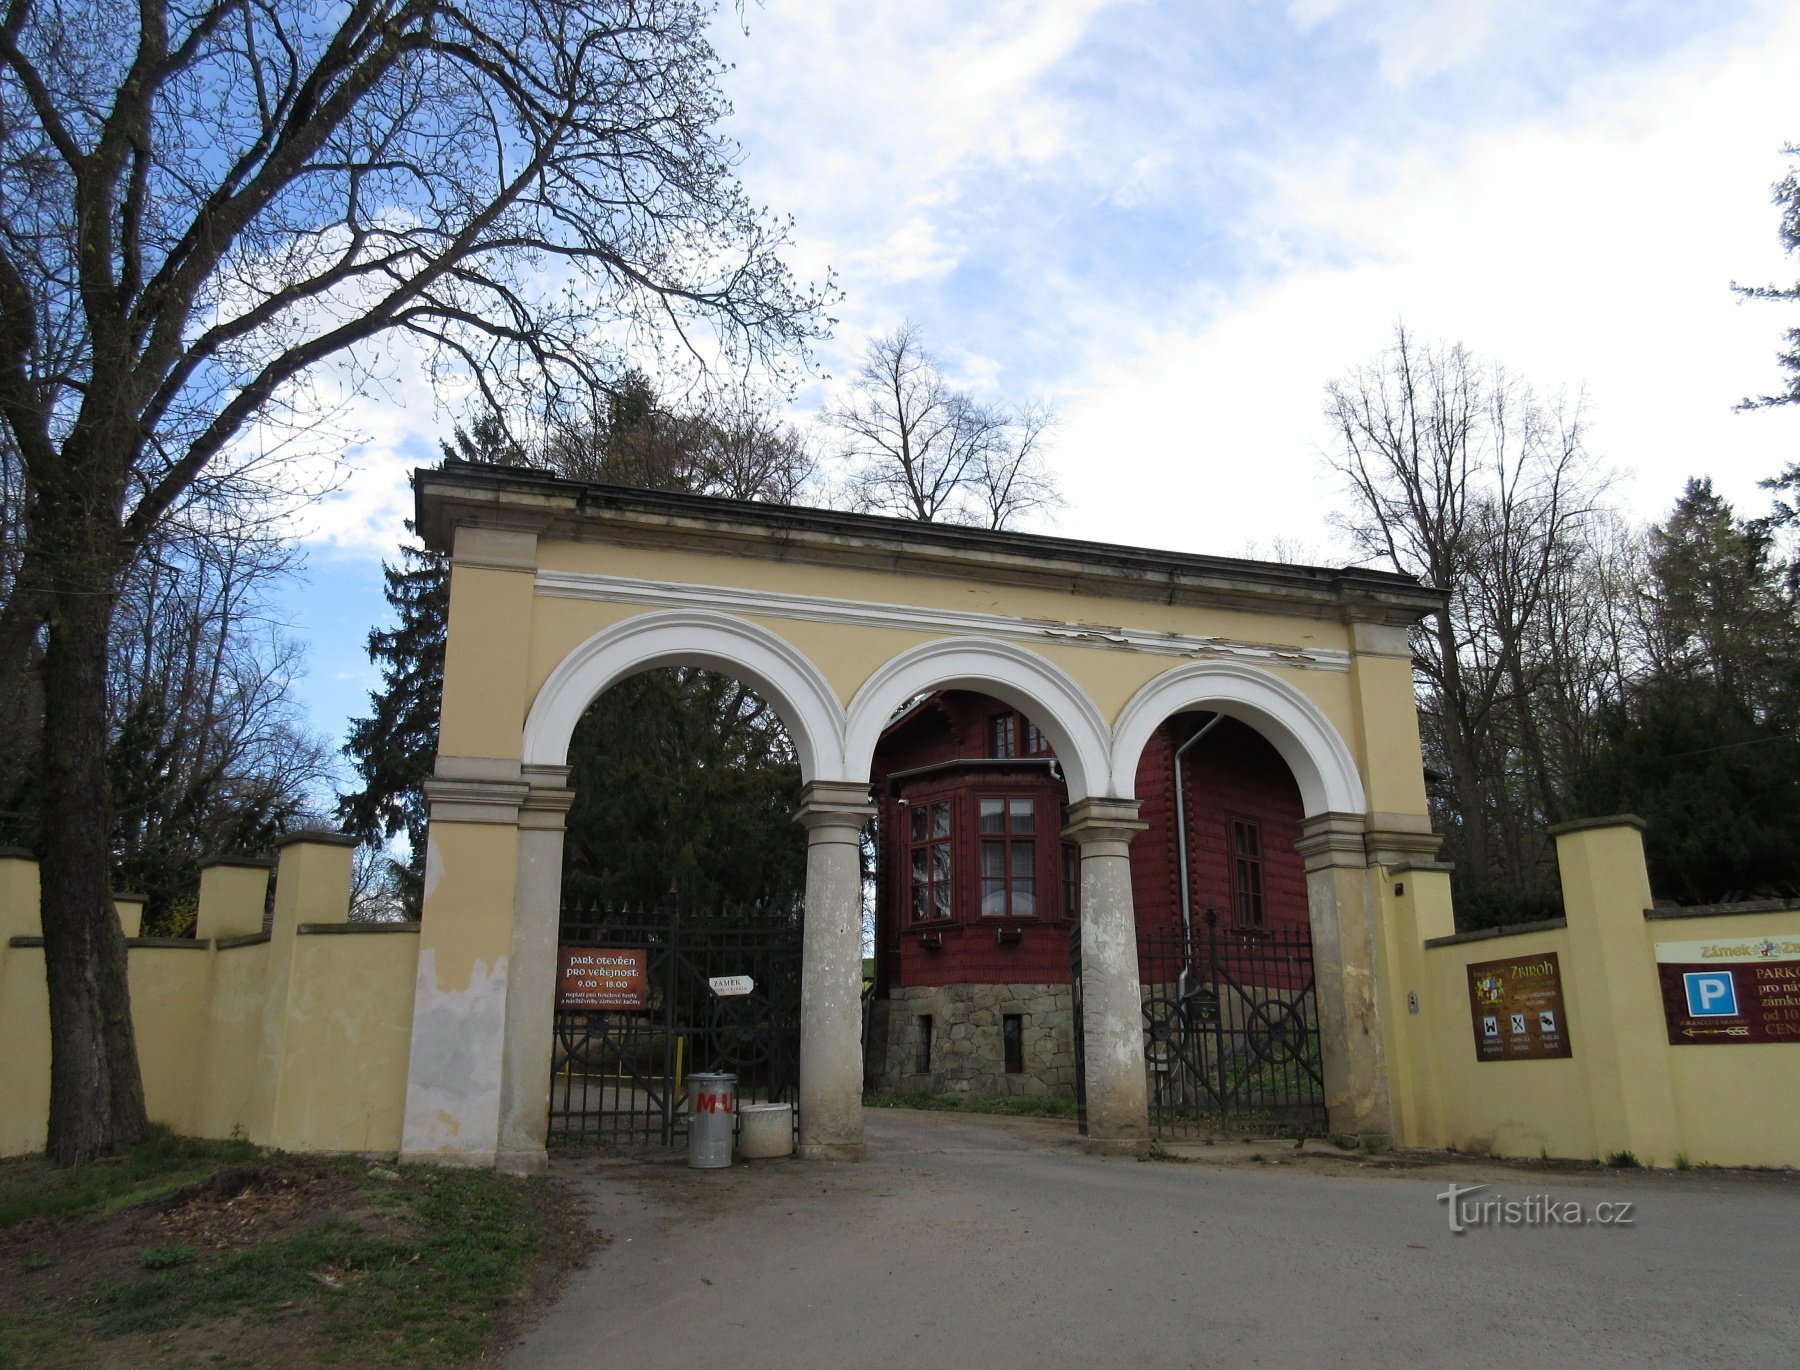 Eingang und Eingang zum Schlosspark